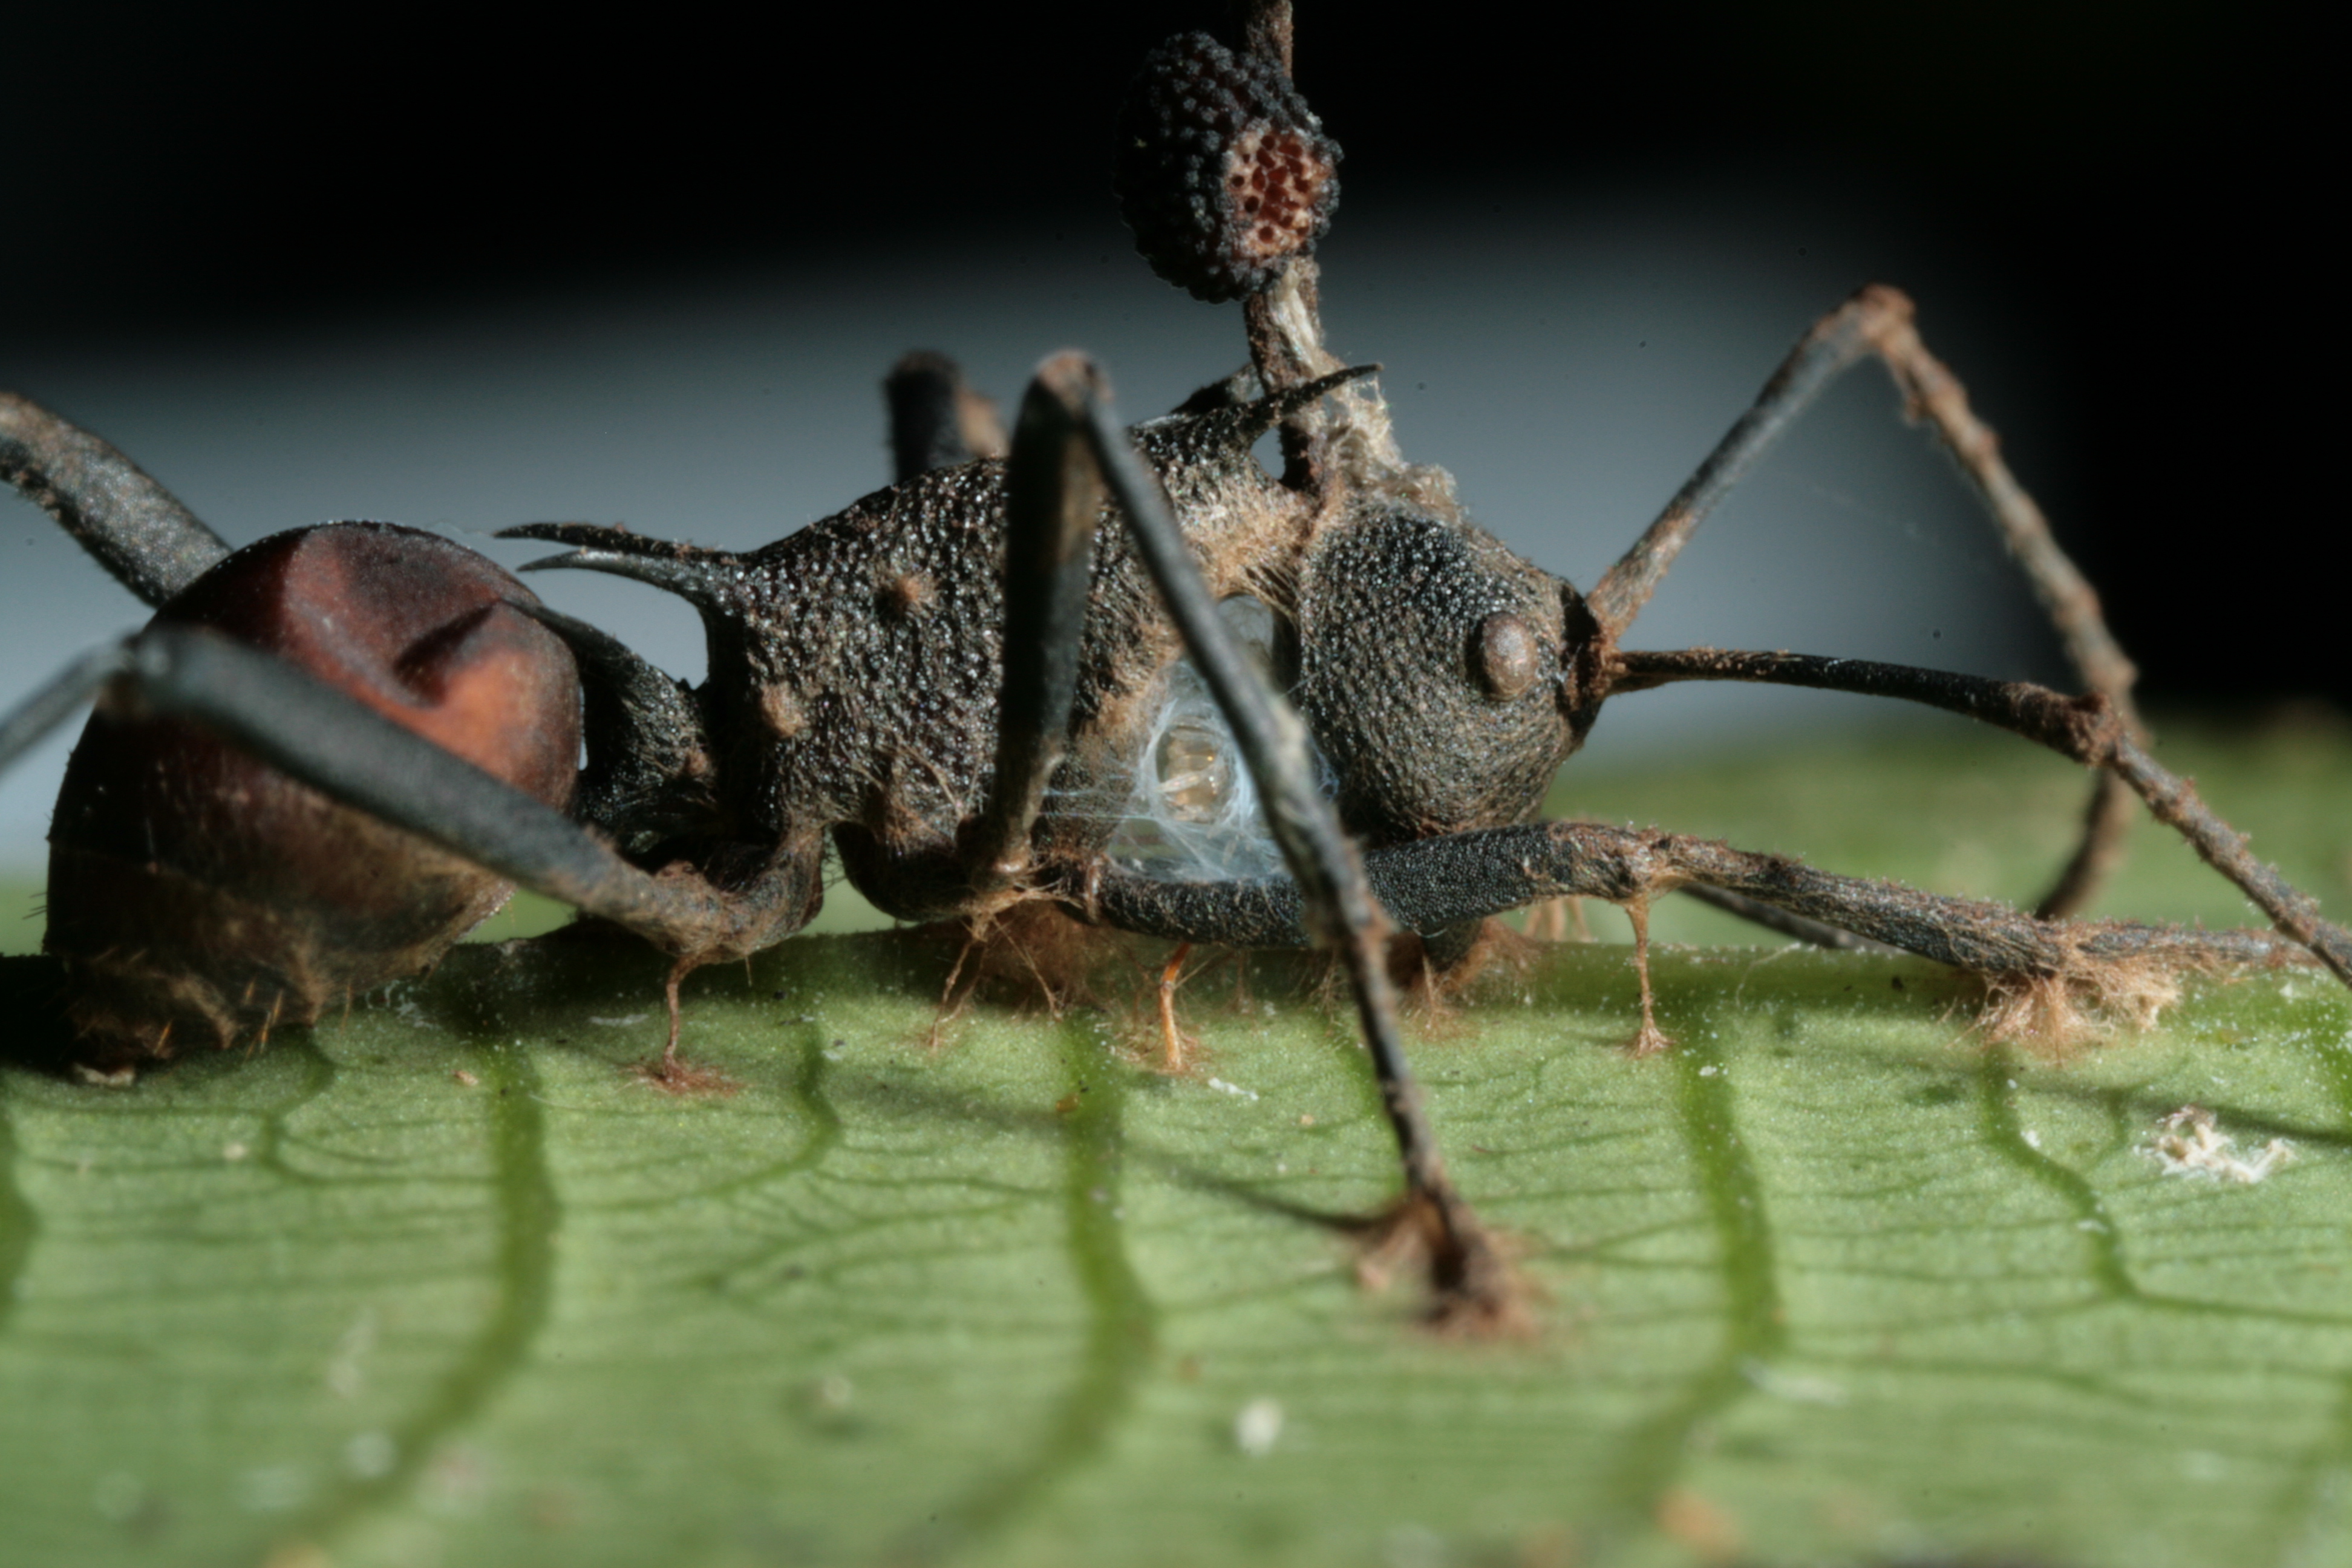 Sokkal durvábban teszi zombivá a hangyákat a parazita gomba, mint ahogy eddig sejtettük